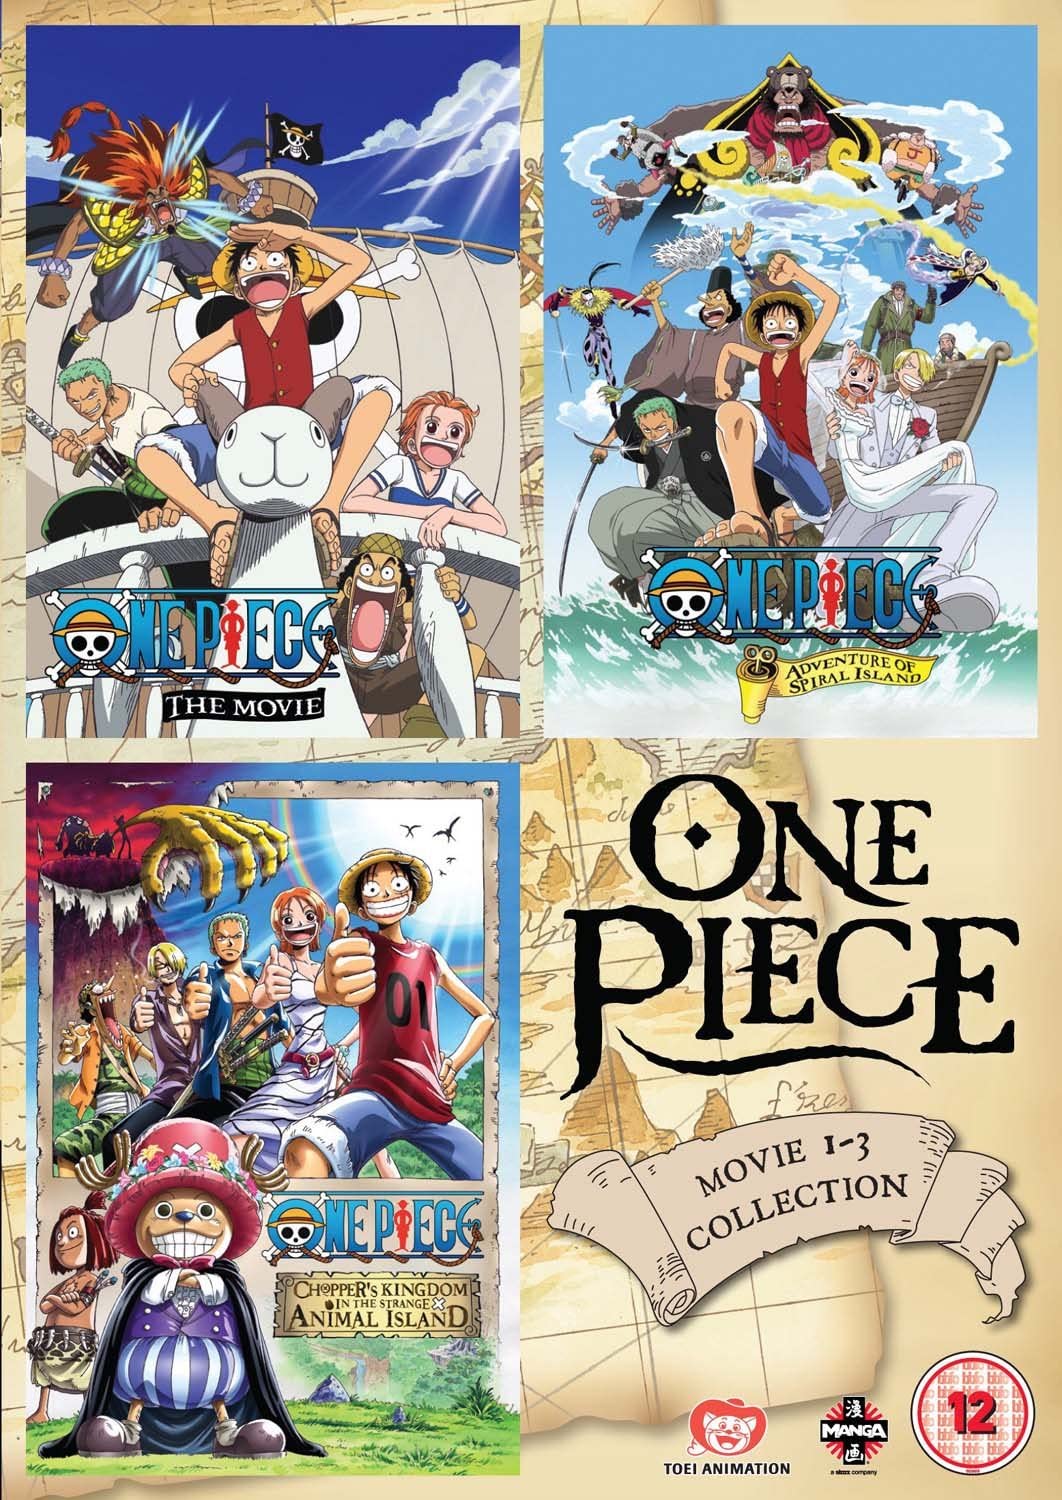 One Piece Movie Collection 1 (Enthält die Filme 1-3) [DVD]